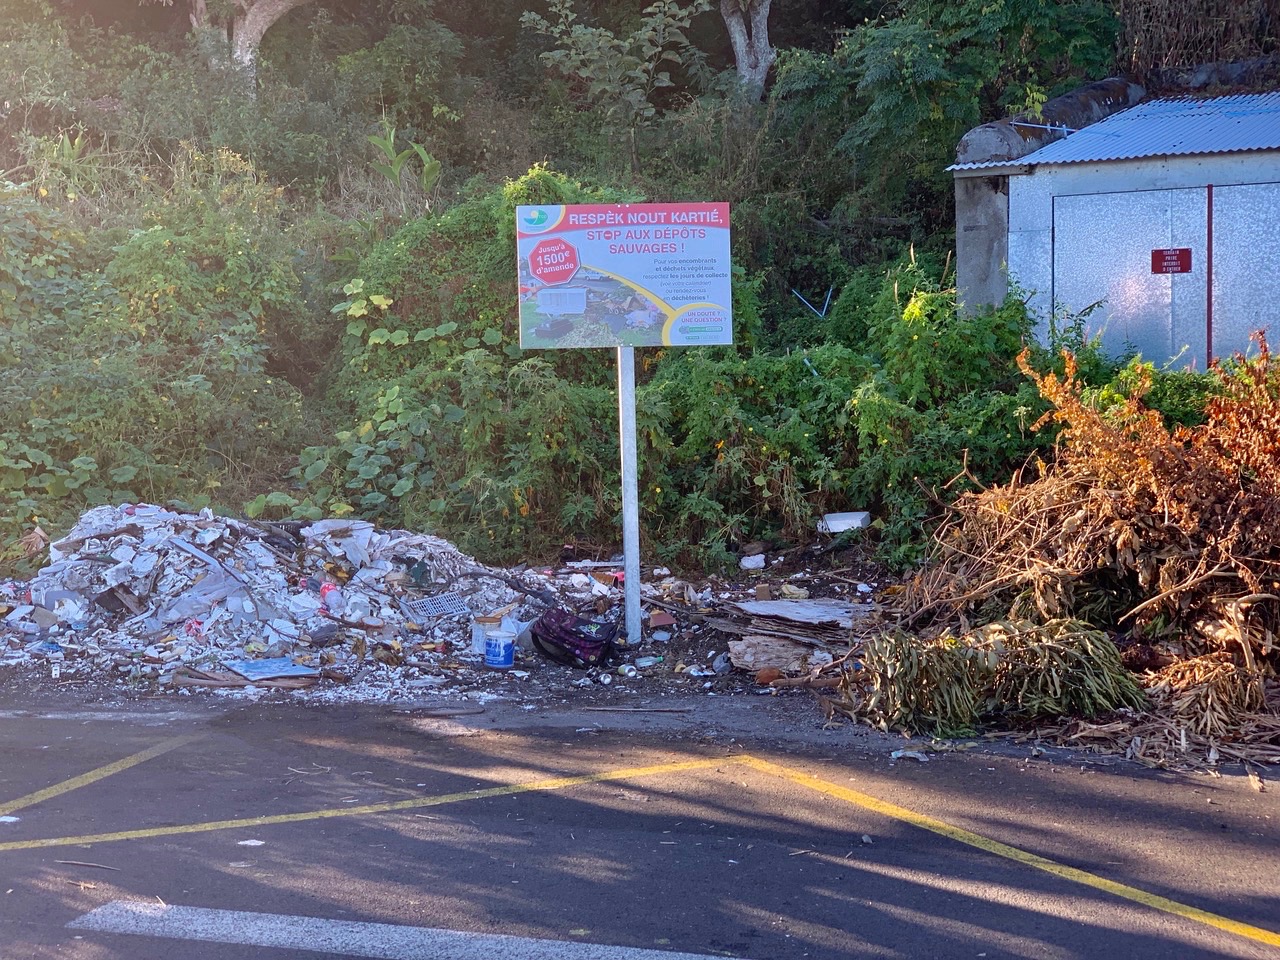 Saint-Leu : Un mois et demi après, les déchets sont toujours là